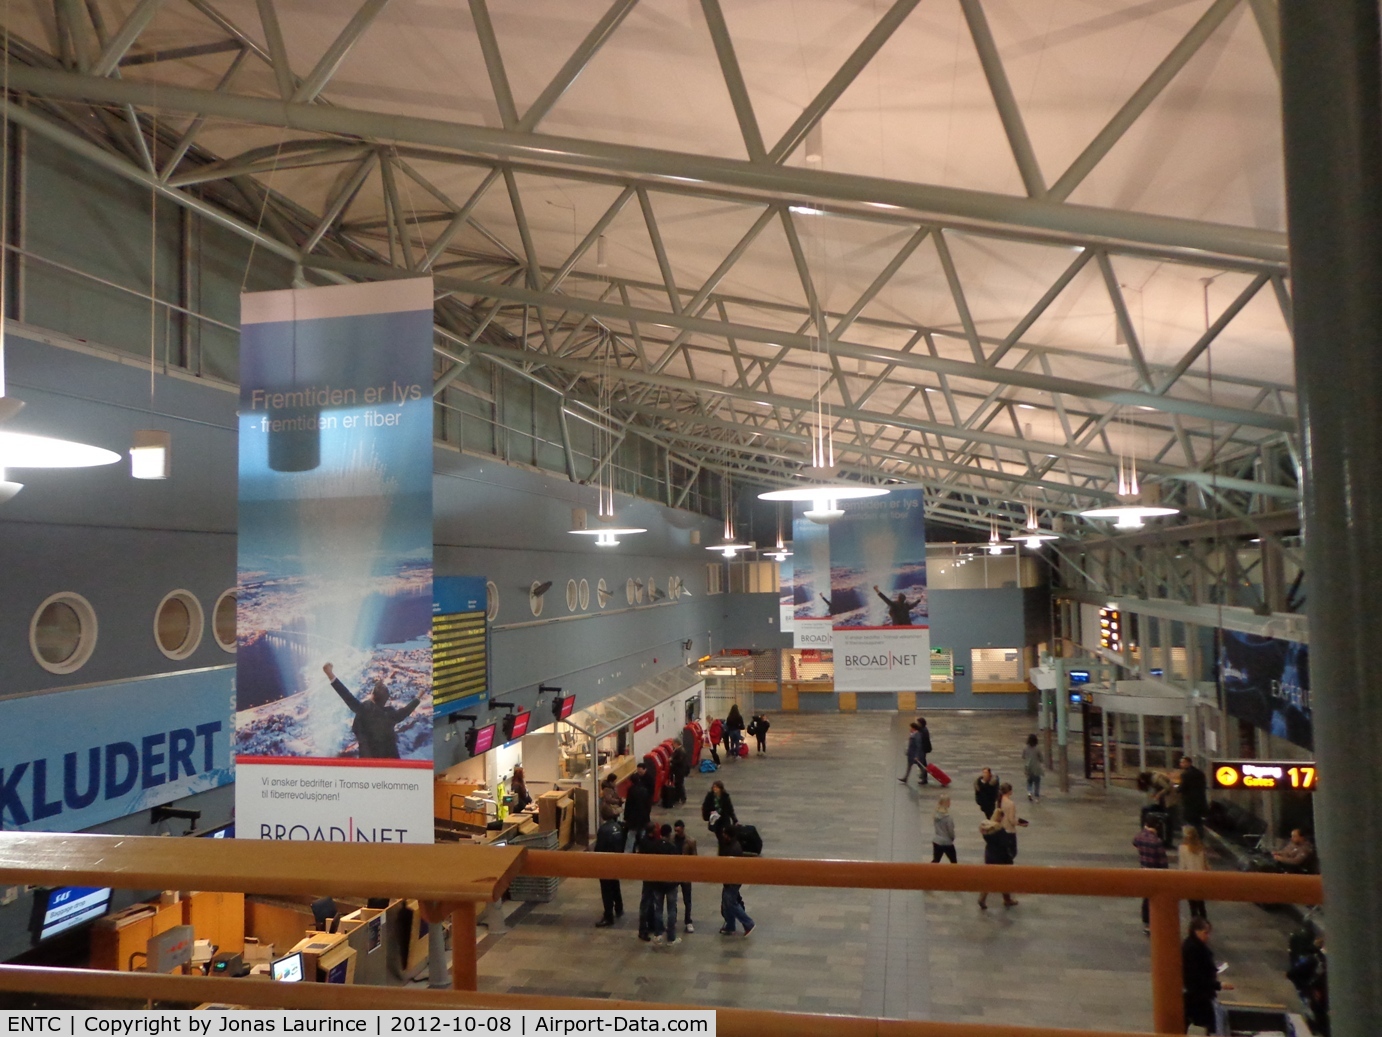 Tromsø Airport, Langnes, Tromsø, Troms Norway (ENTC) - The great hall of the Langnes Tromsø Airport